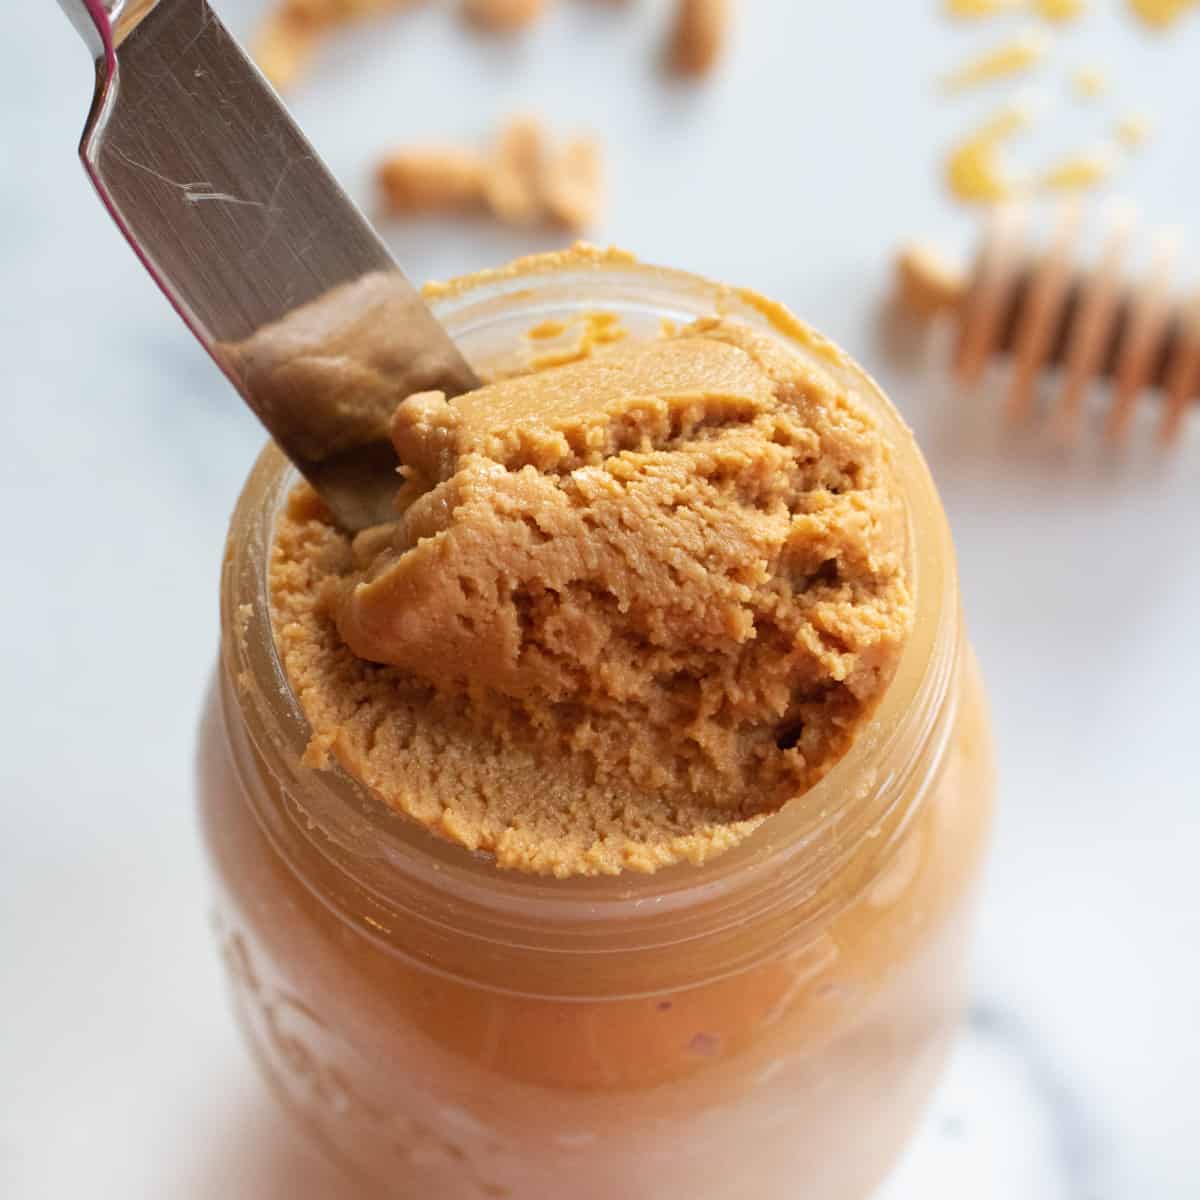 an open jar of peanut butter with a knife running through it.